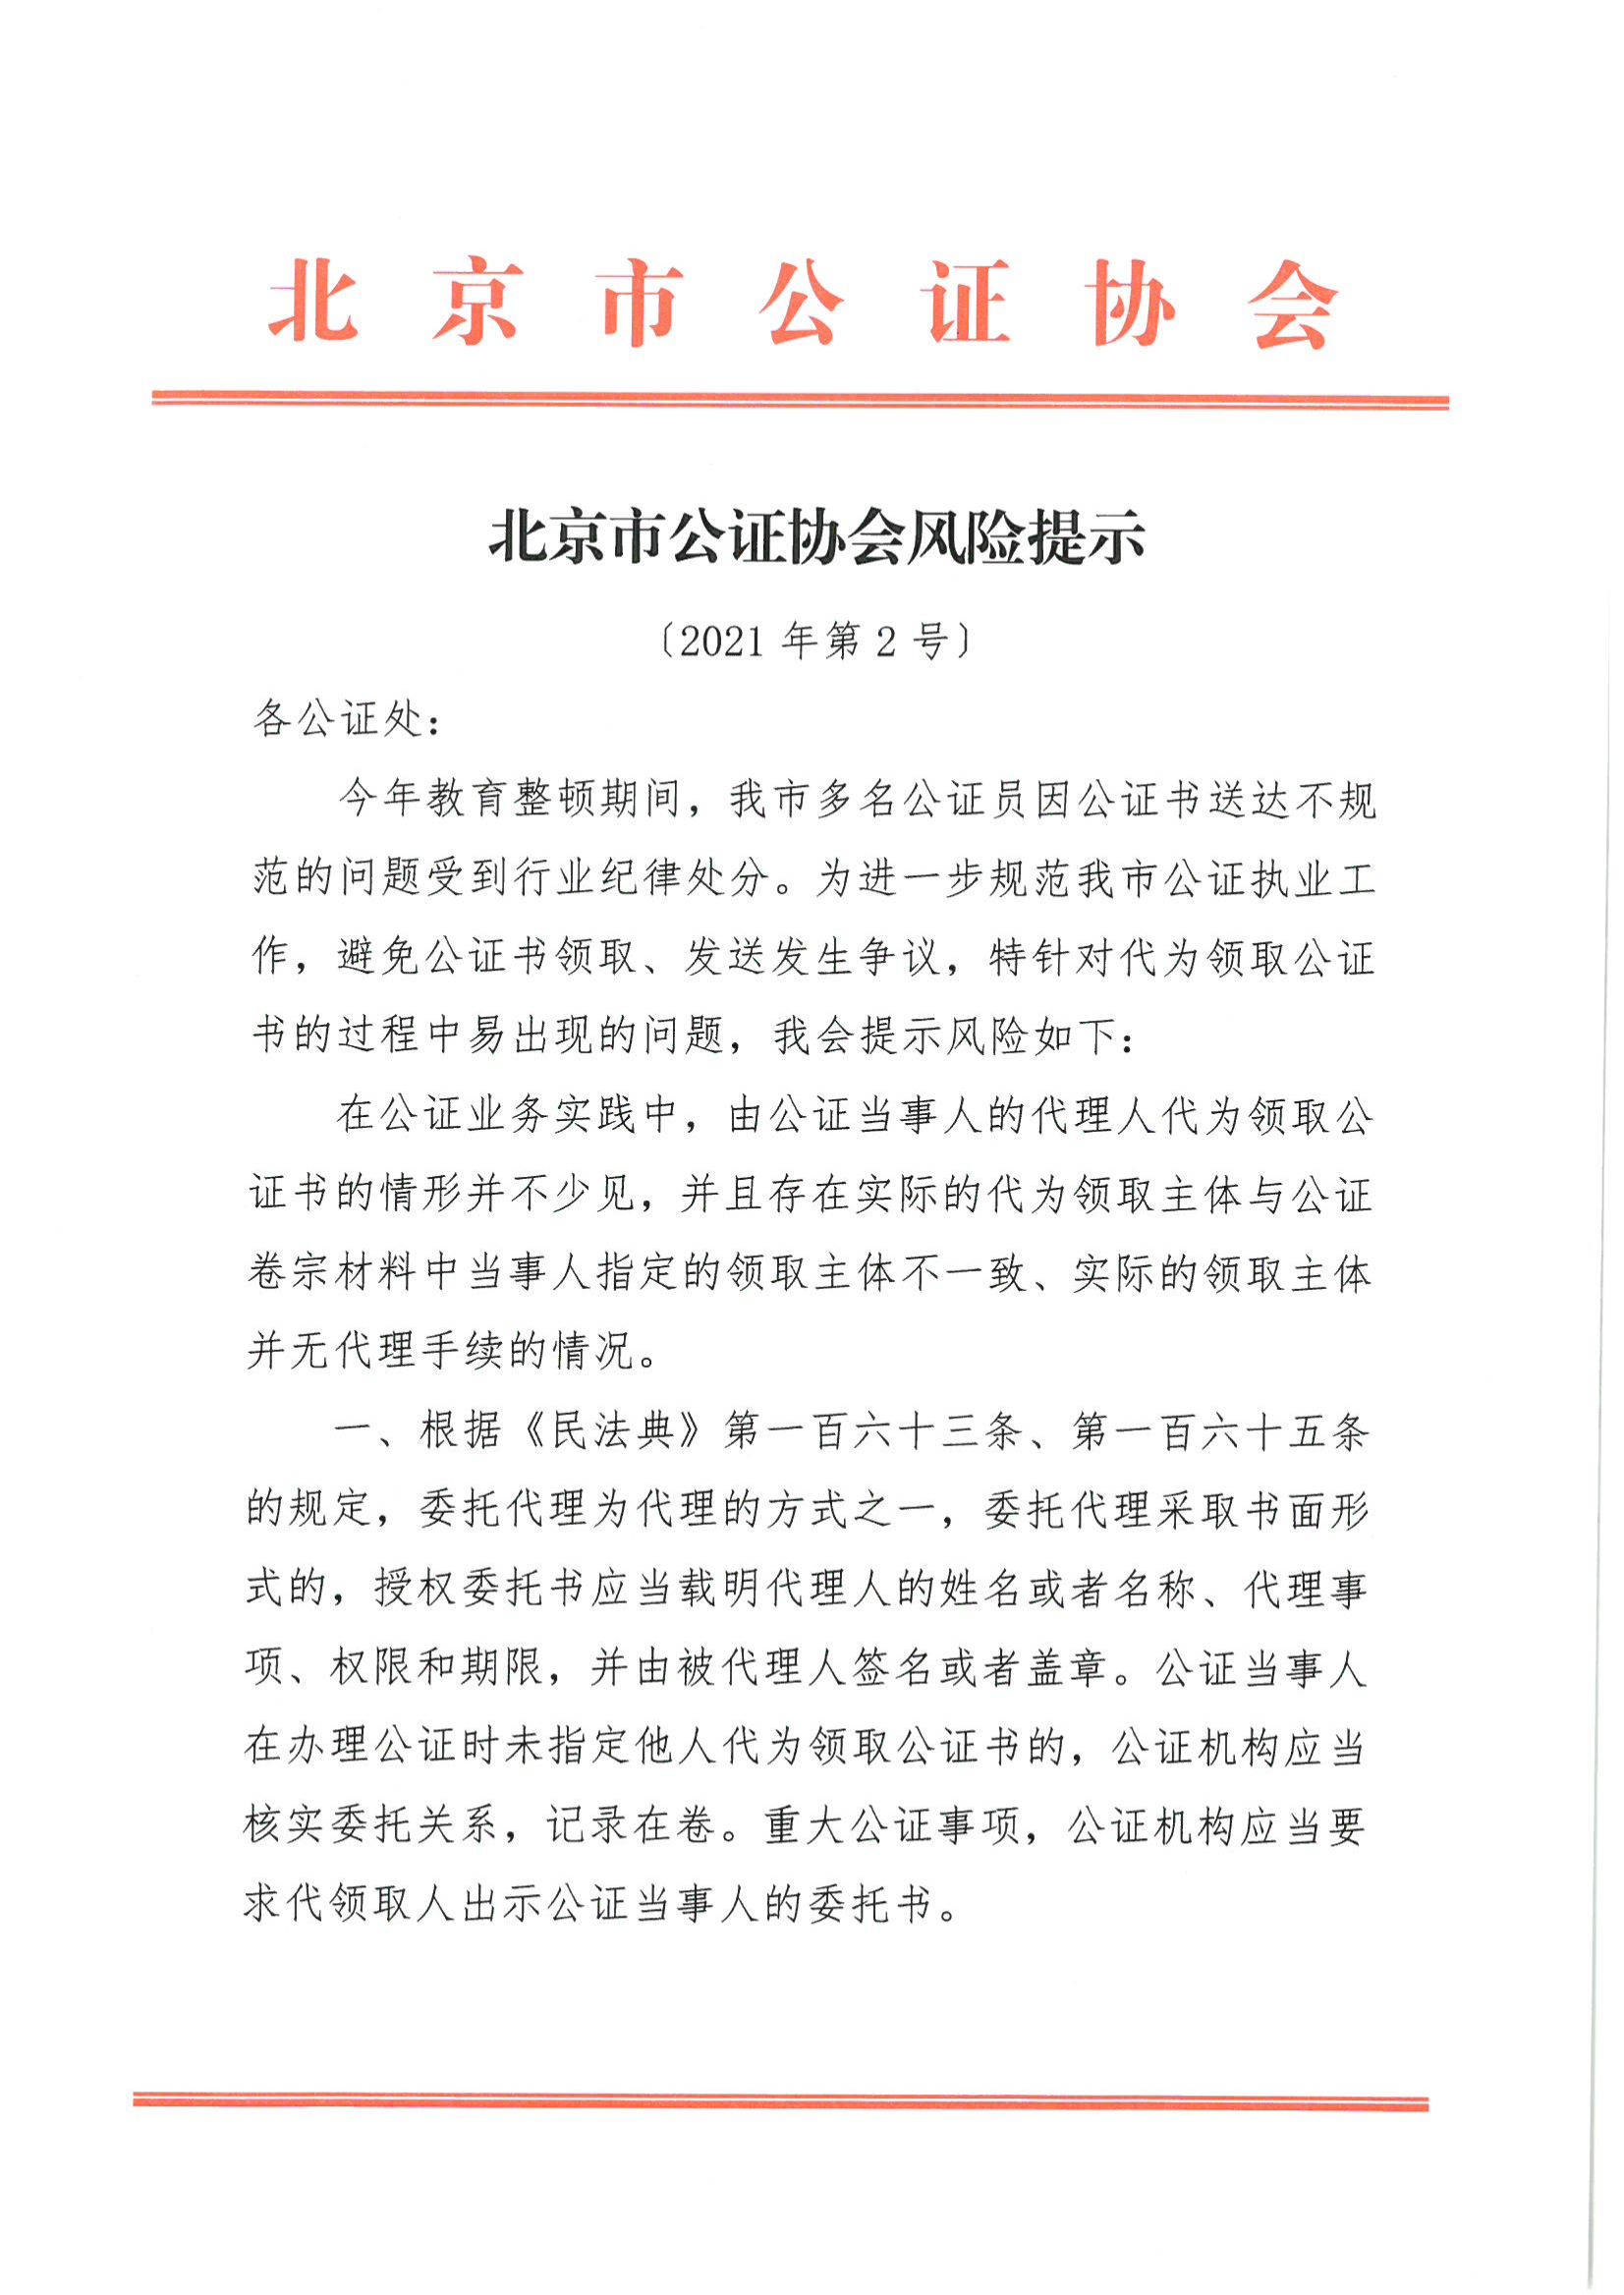 7、北京市公证协会风险提示【2021年第2号】_00